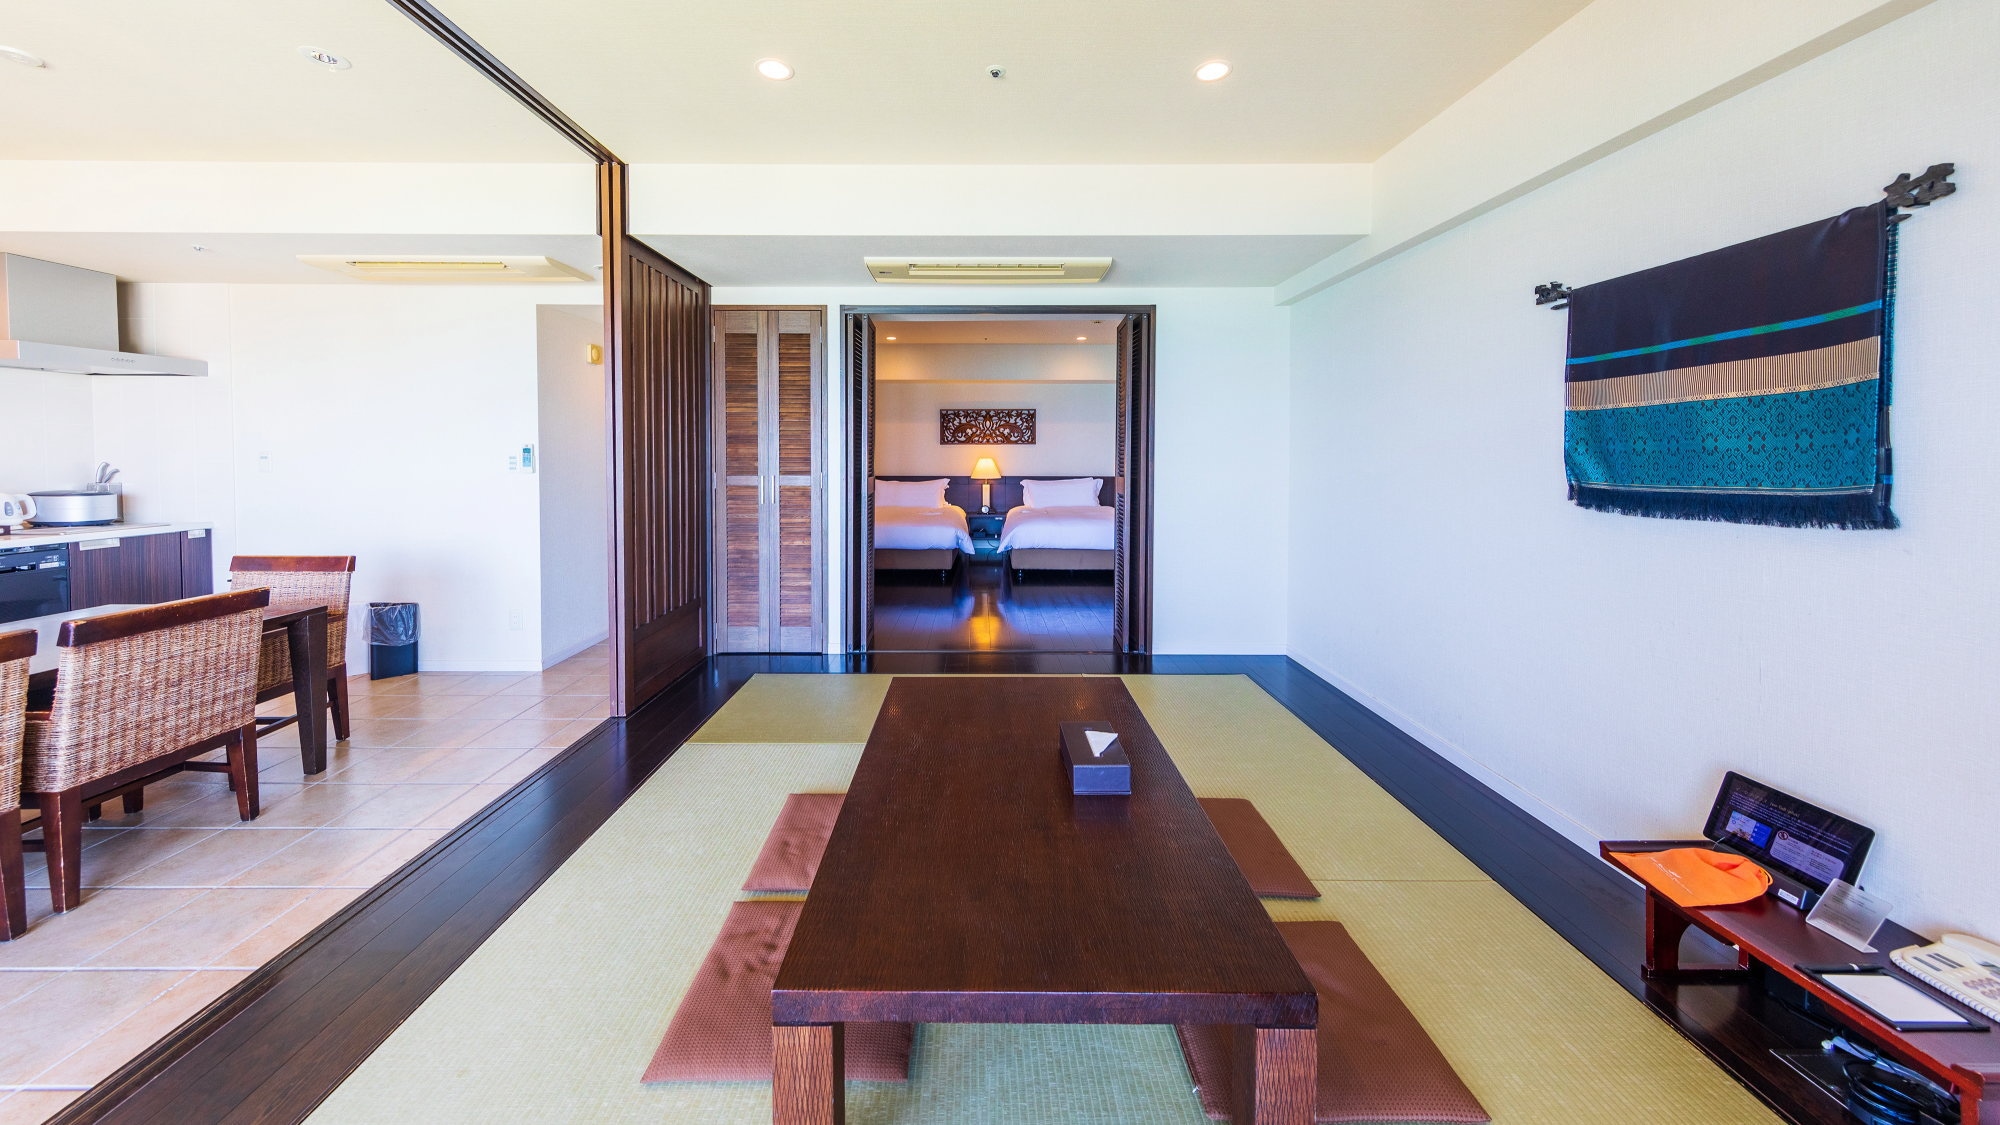 ■ Contoh suite gaya Jepang-Barat (61-71 meter persegi) di gedung kondominium